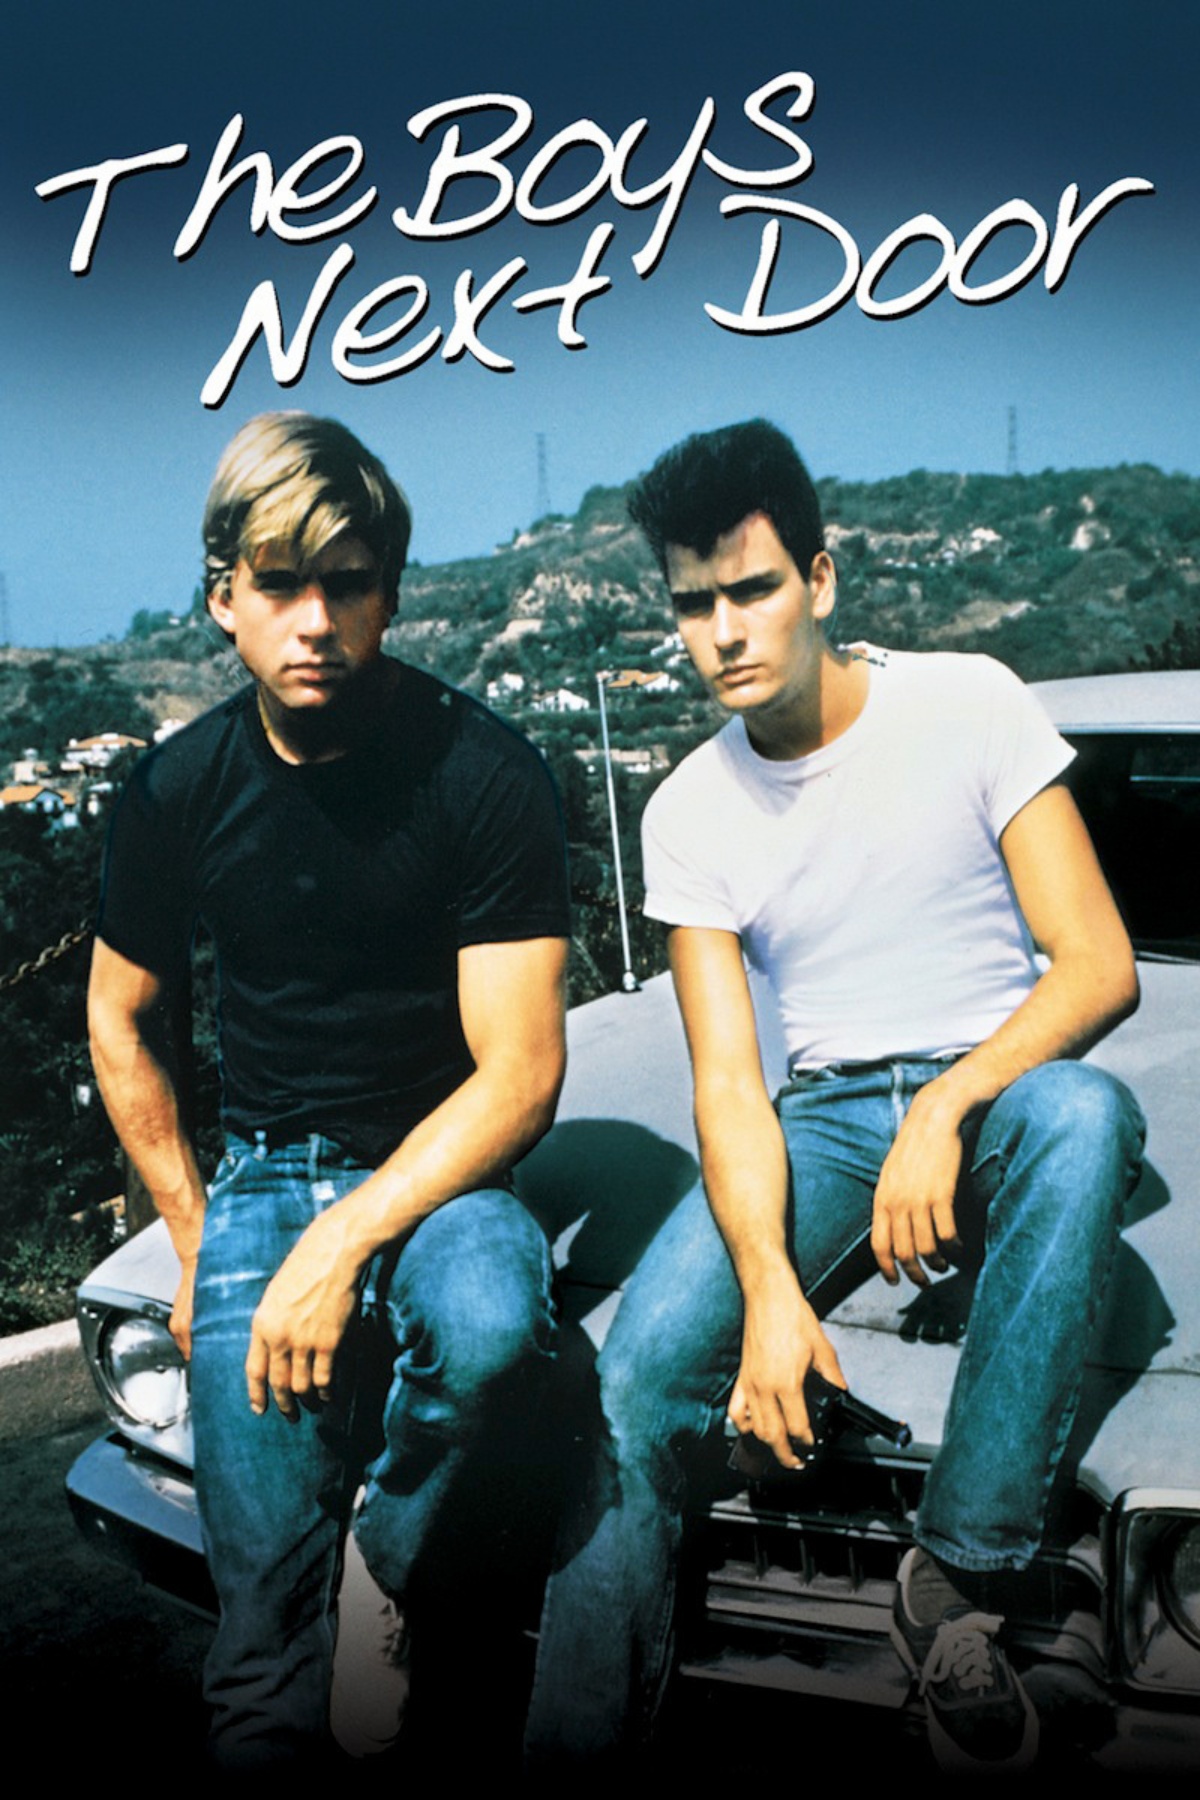 Соседские ребята. The boys next Door 1985. Boy next Door группа.